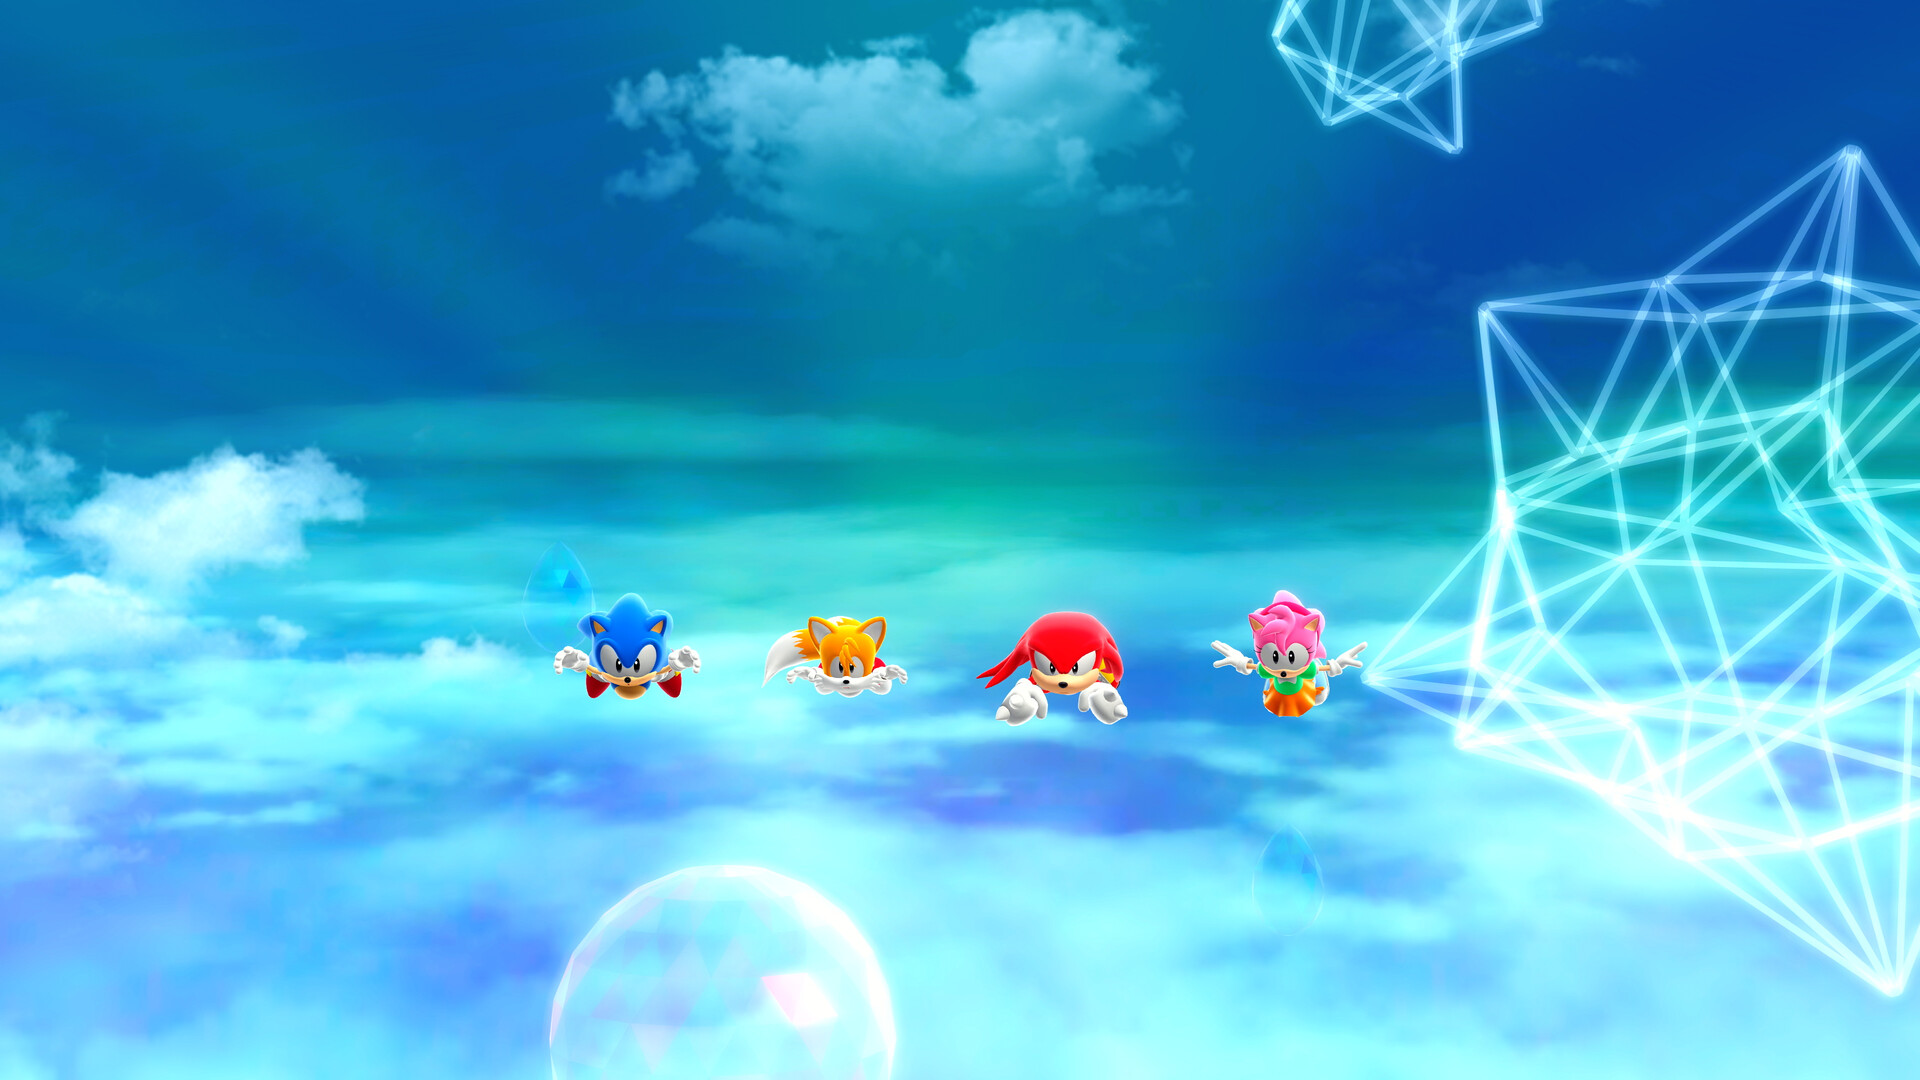 Sonic Superstars Steam Account